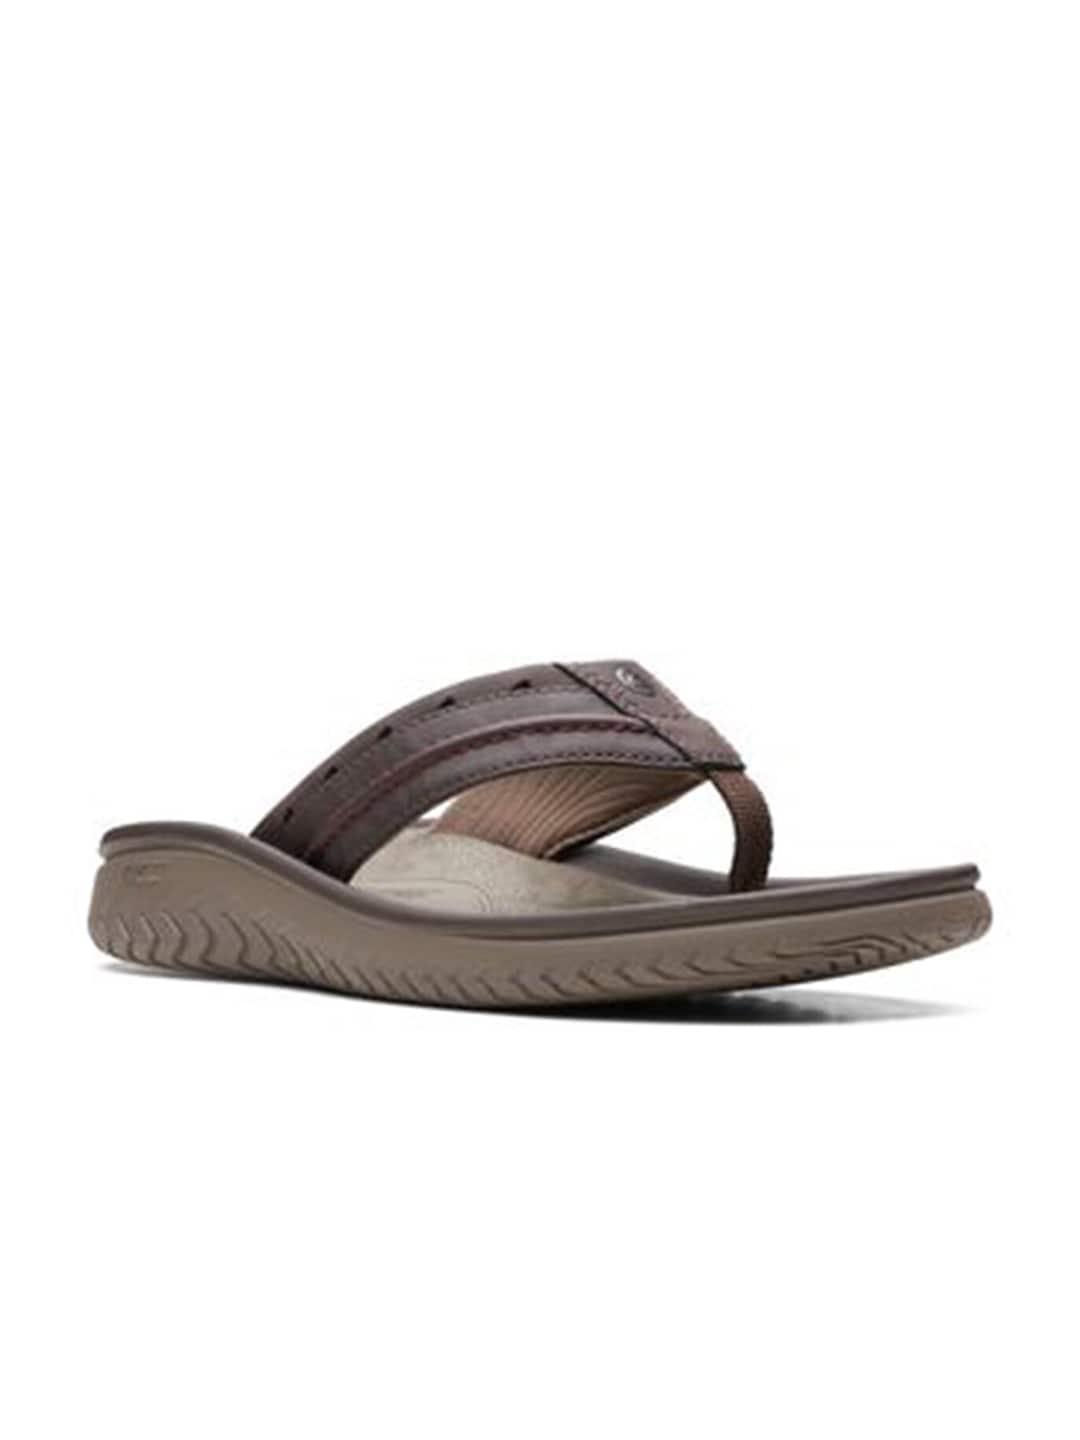 clarks men brown comfort sandals